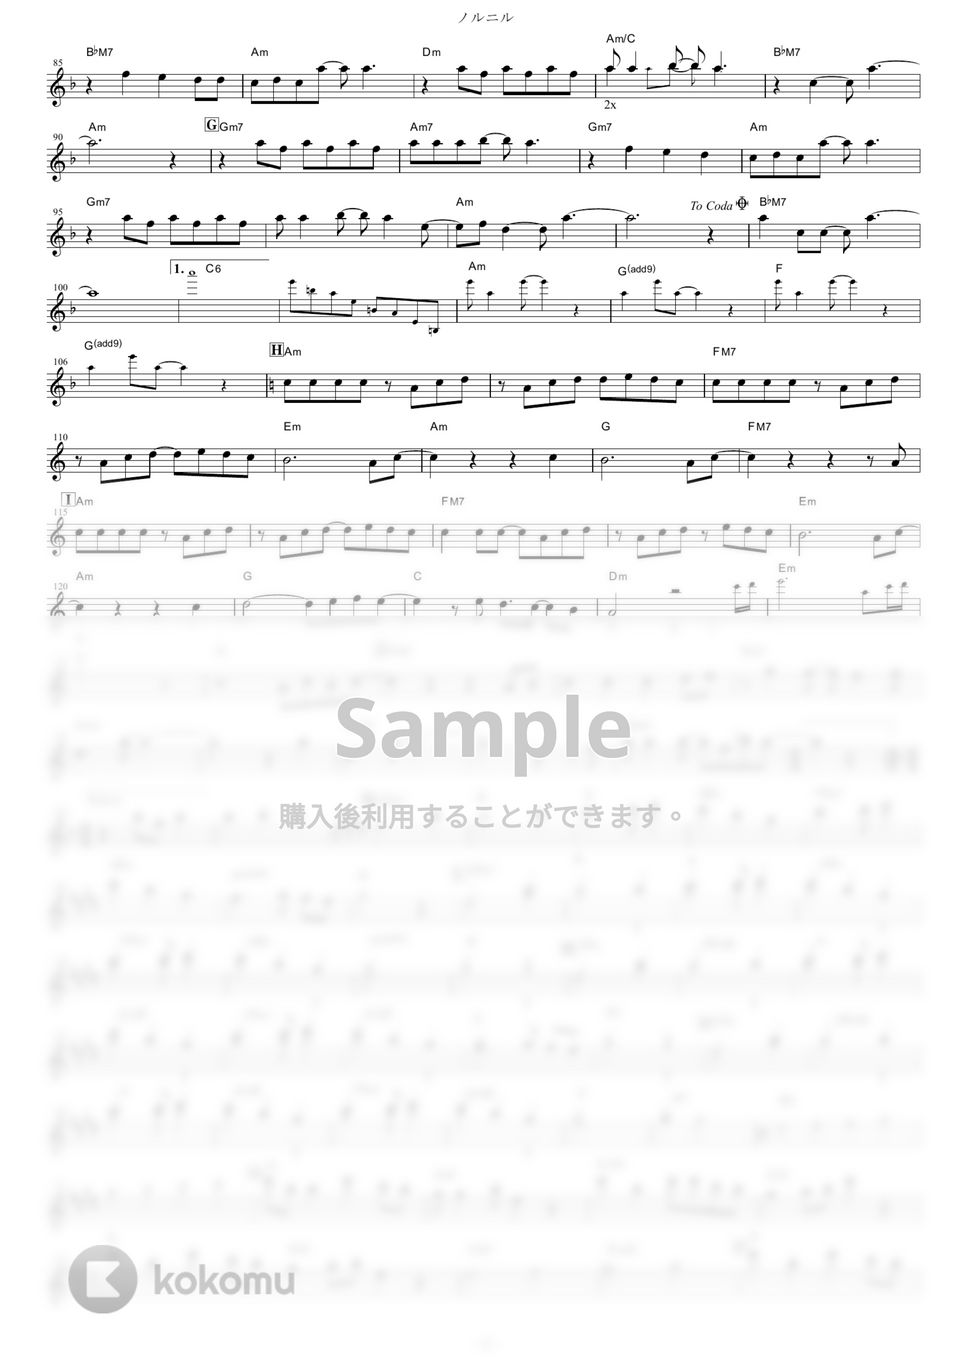 やくしまるえつこメトロオーケストラ - ノルニル (『輪るピングドラム』 / in C) by muta-sax